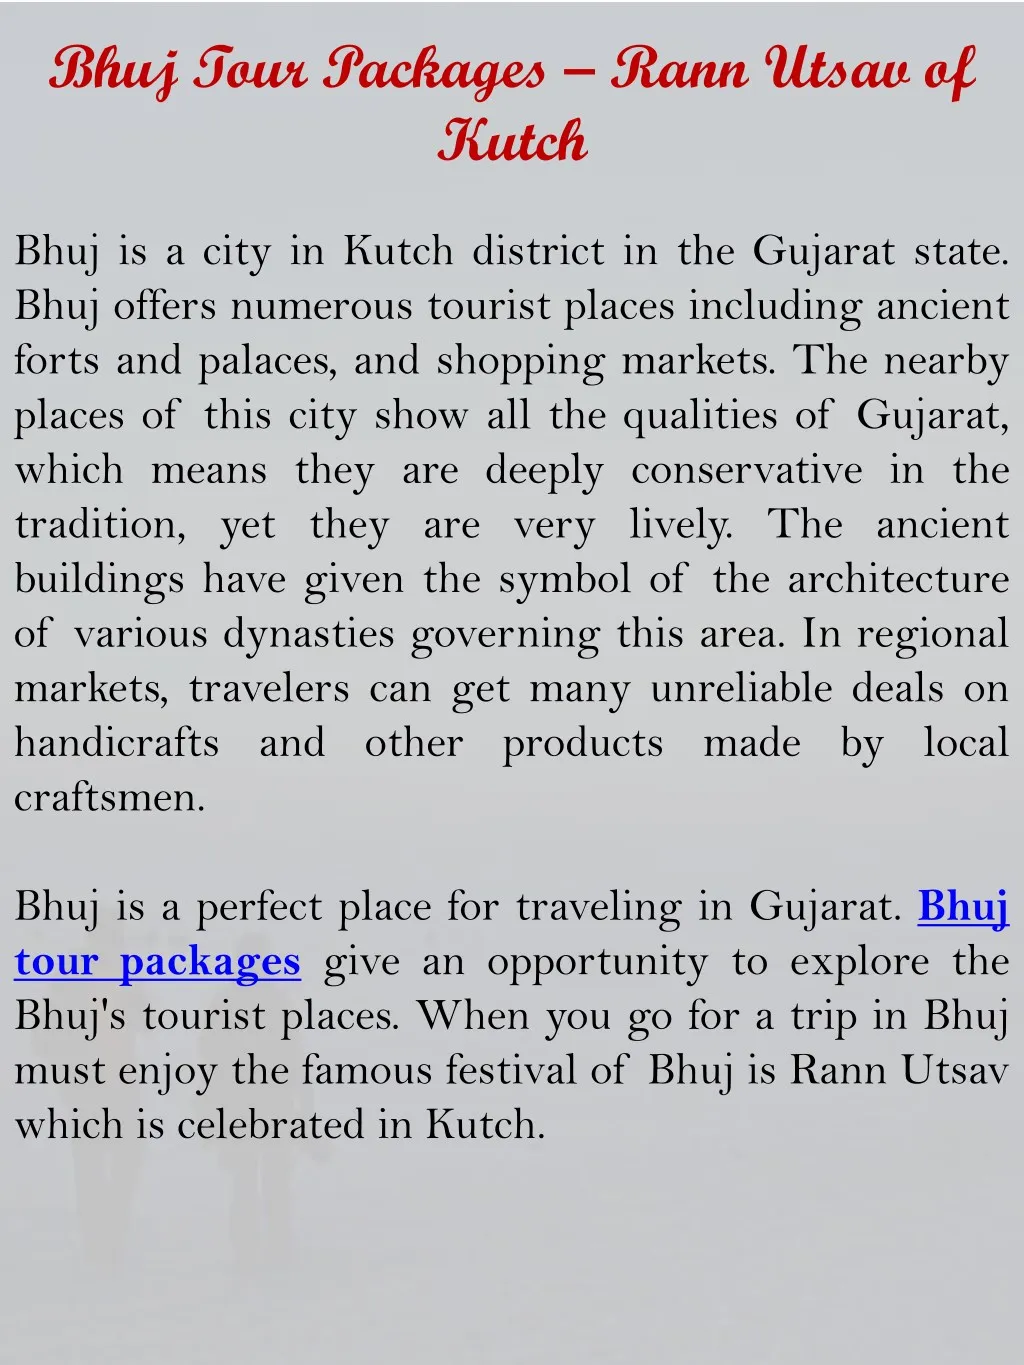 bhuj tour packages rann utsav of kutch